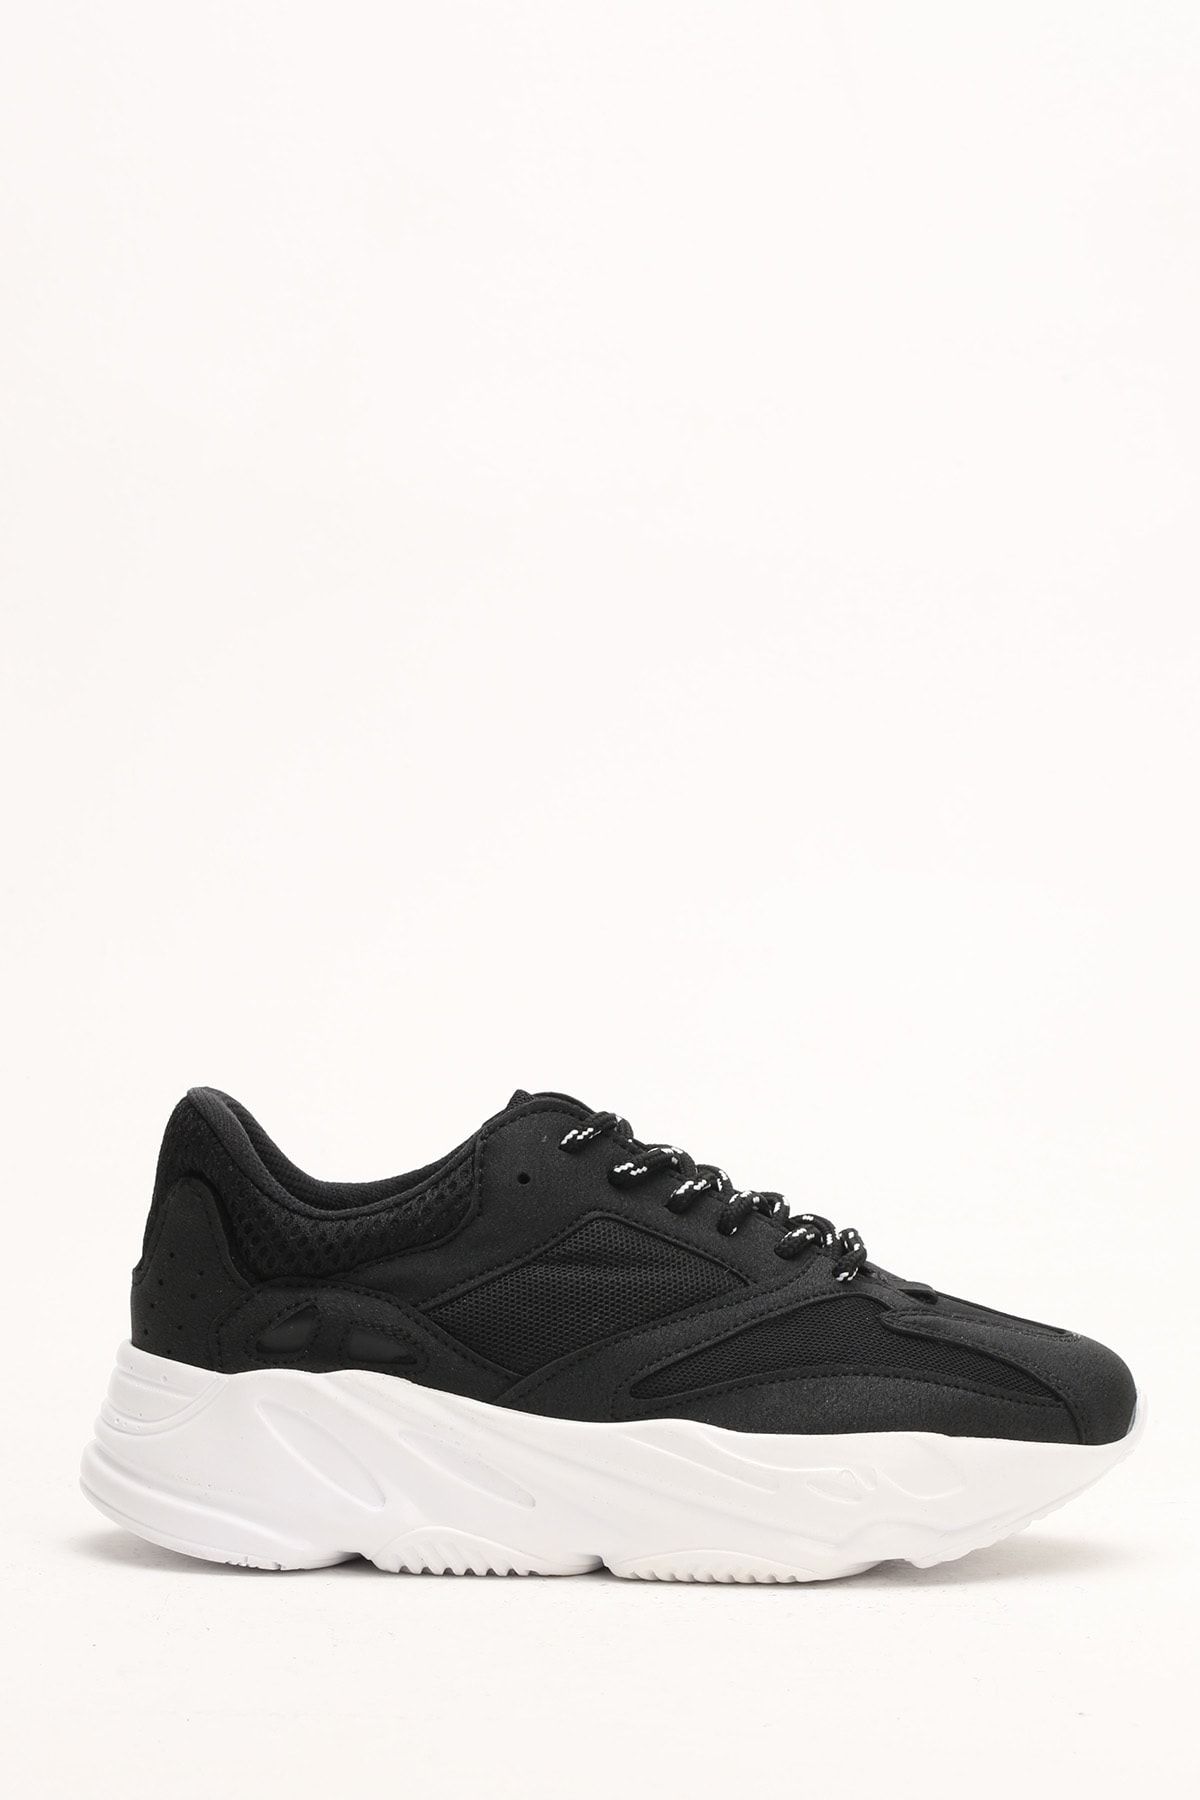 Ayakkabı Modası Siyah Beyaz Kadın Spor Ayakkabı 5003-19-105021